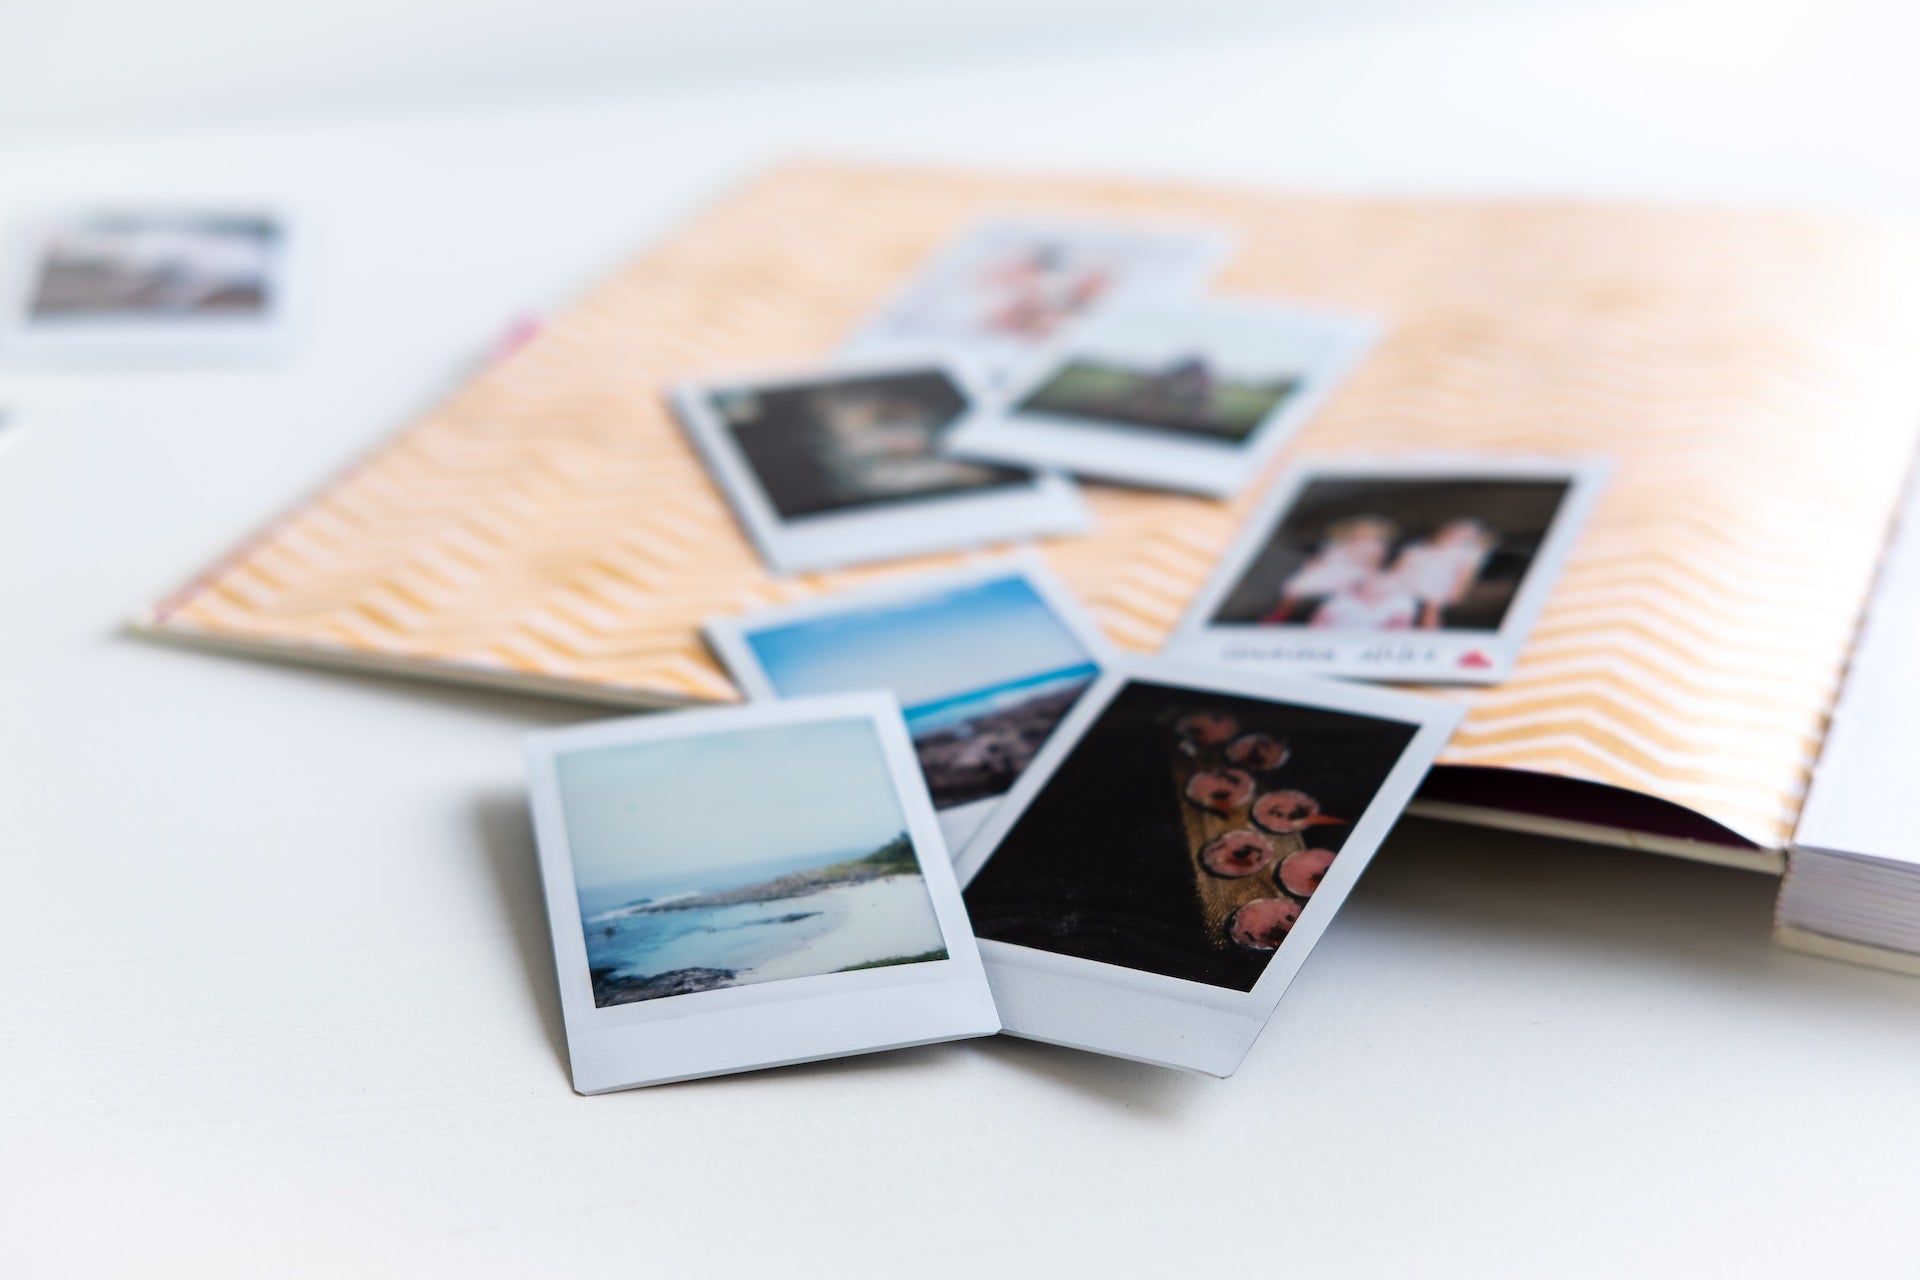 Polaroid photos on a table